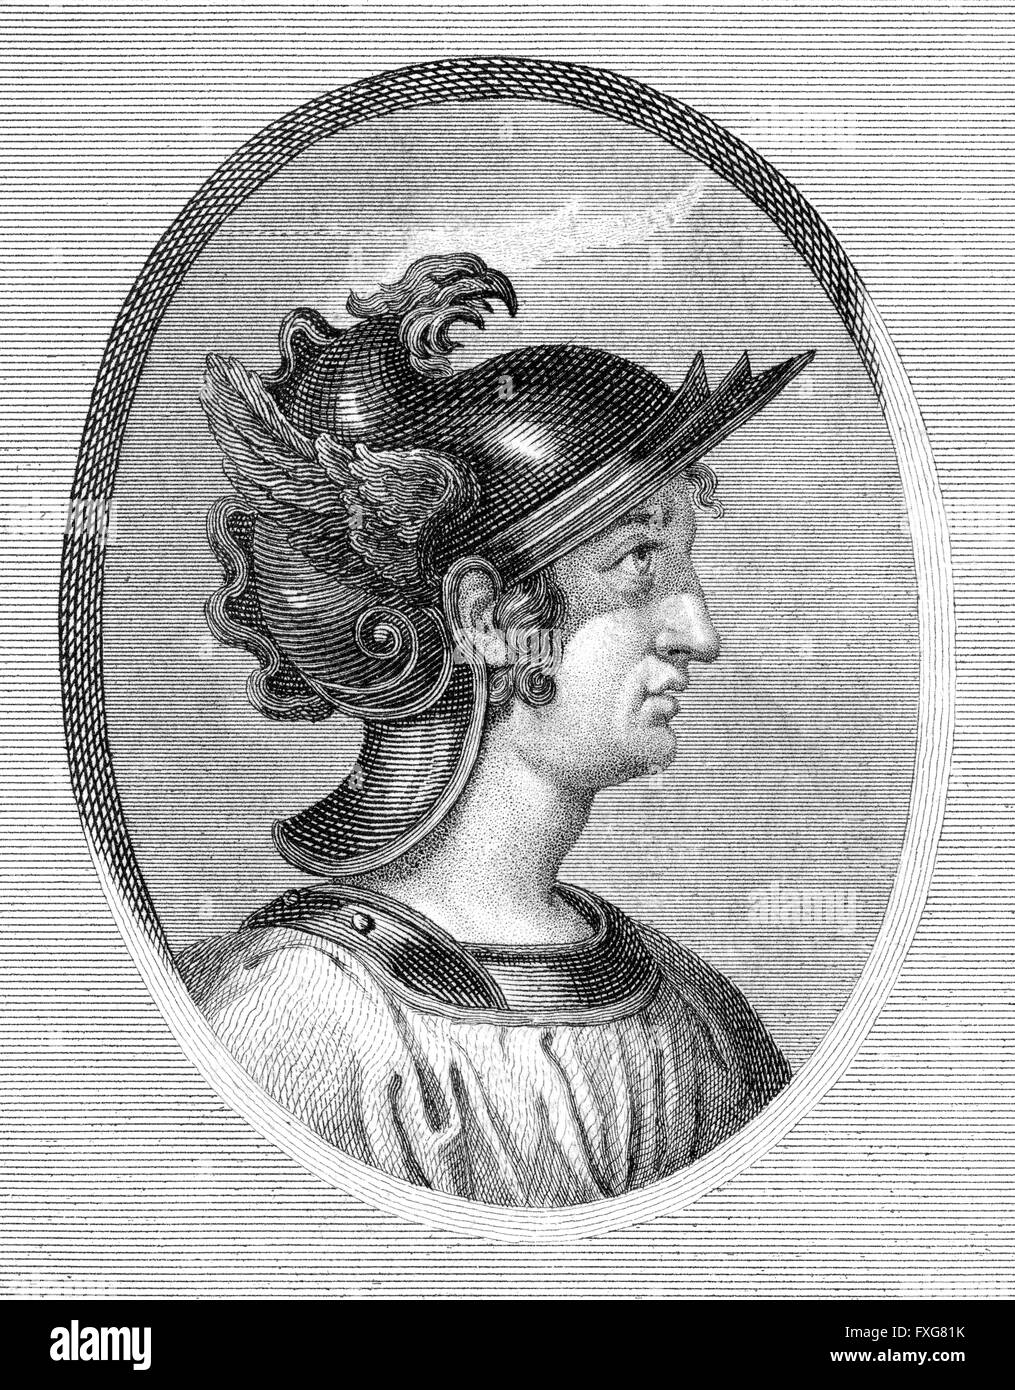 Gaius Caecilius Metellus Caprarius, c. 160 BC, a consul of the Roman Republic, Stock Photo